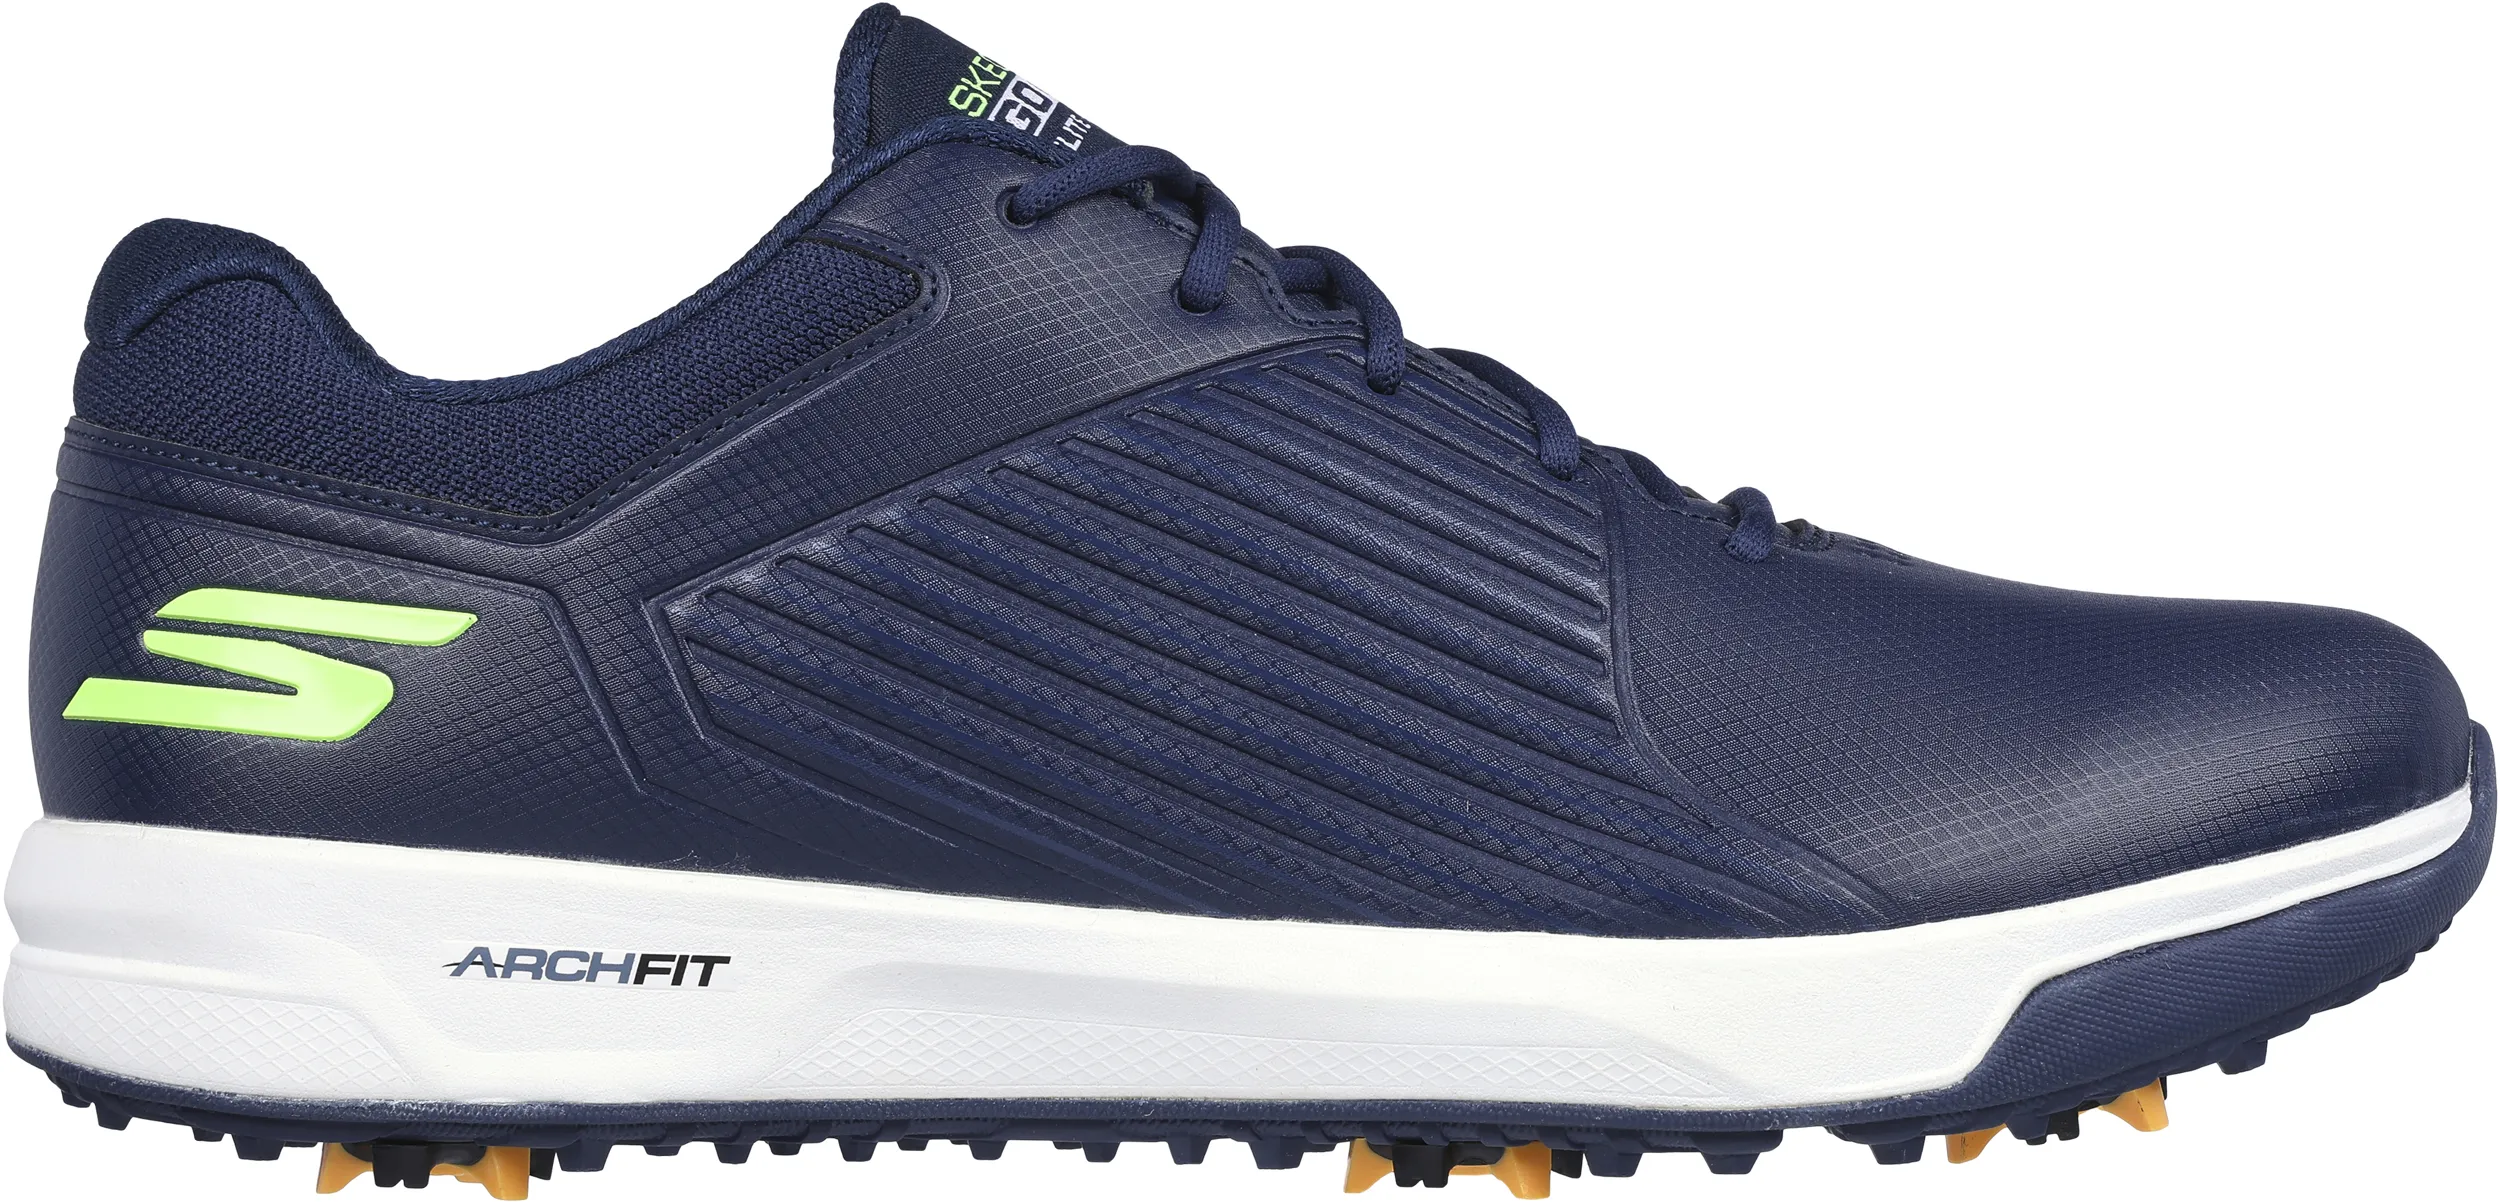 Skechers Elite 5 Vortex Golfschuh, dunkelblau/hellgrün